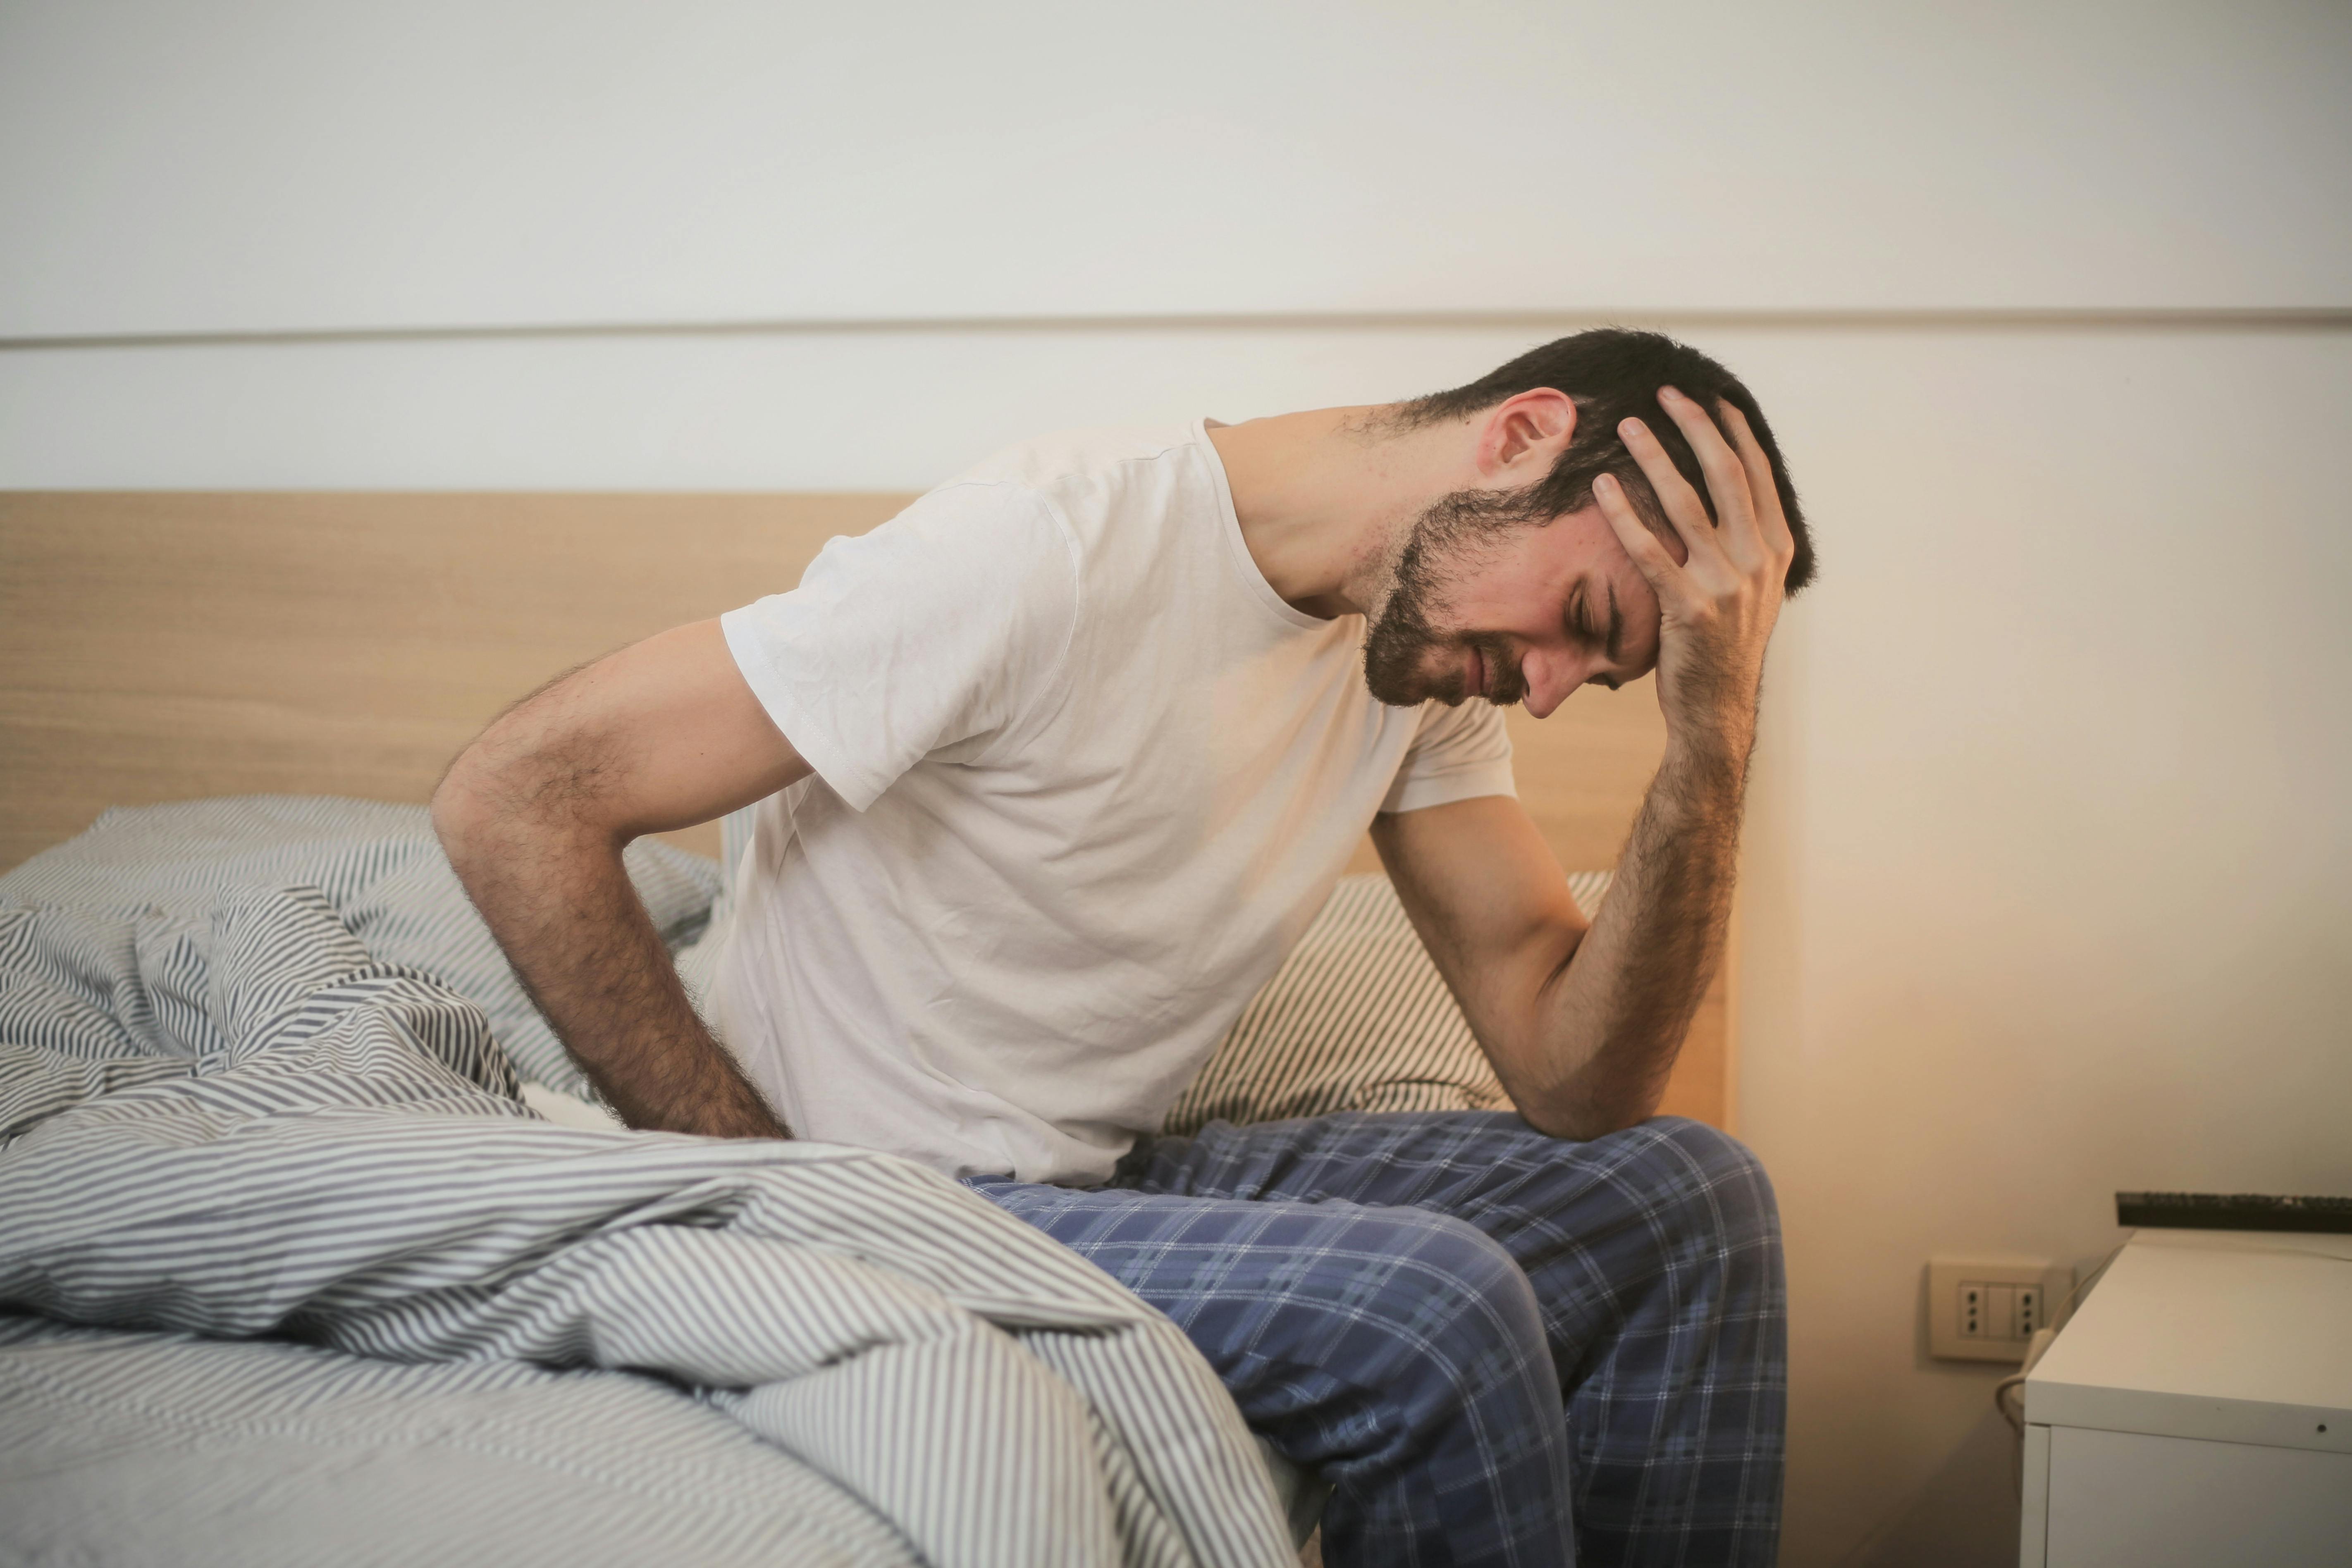 Ein aufgebrachter Mann hält sich den Kopf, während er auf einem Bett sitzt | Quelle: Pexels